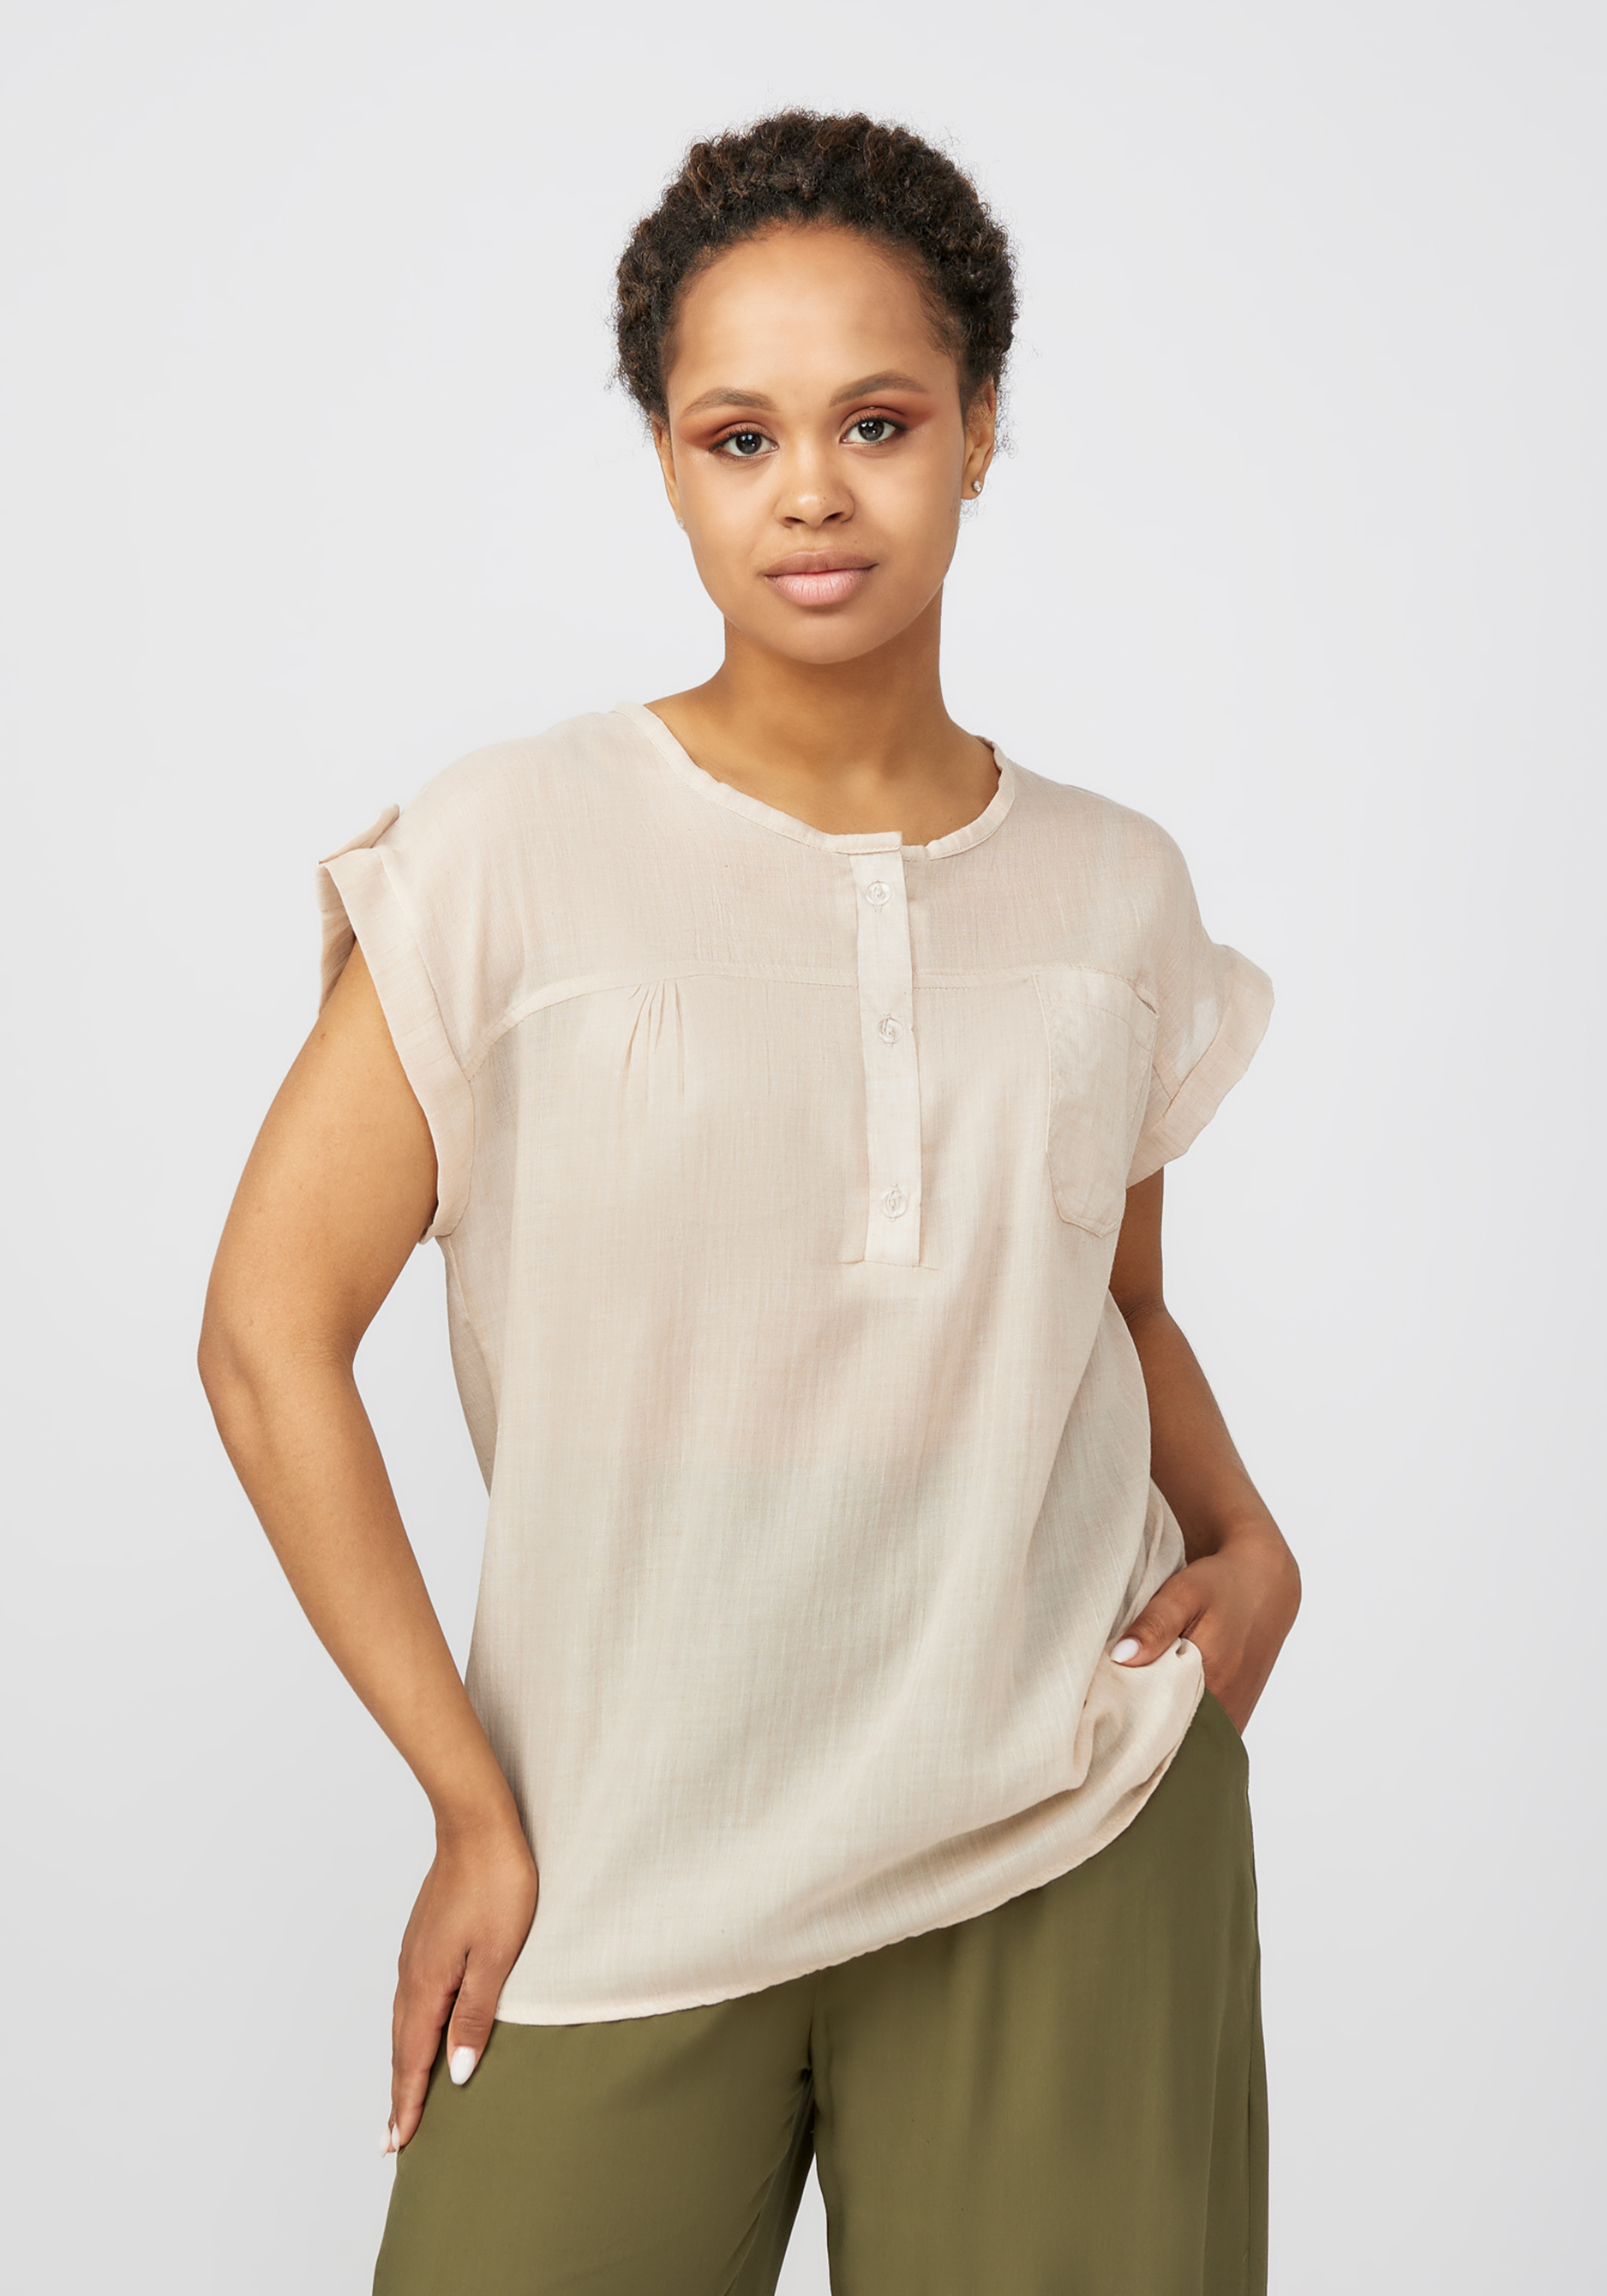 Блуза с коротким рукавом Жасмин блуза kiabi с коротким рукавом 44 размер